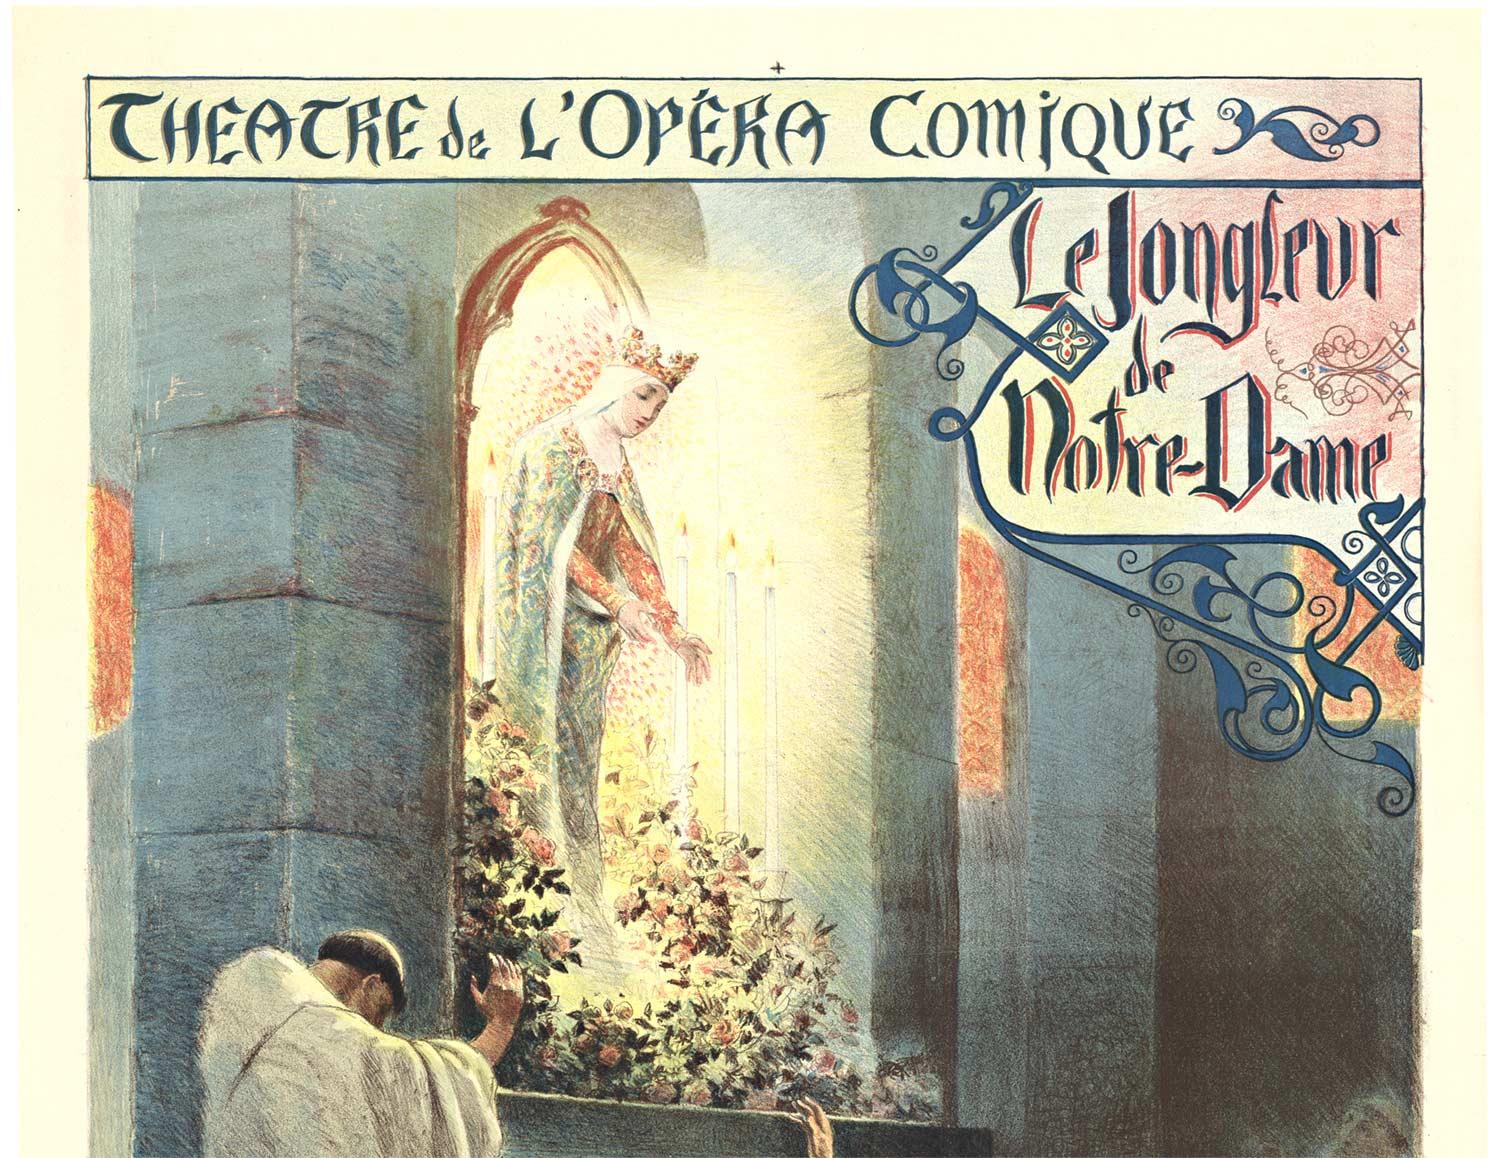 Original 'Le Jongleur de Notre-Dame